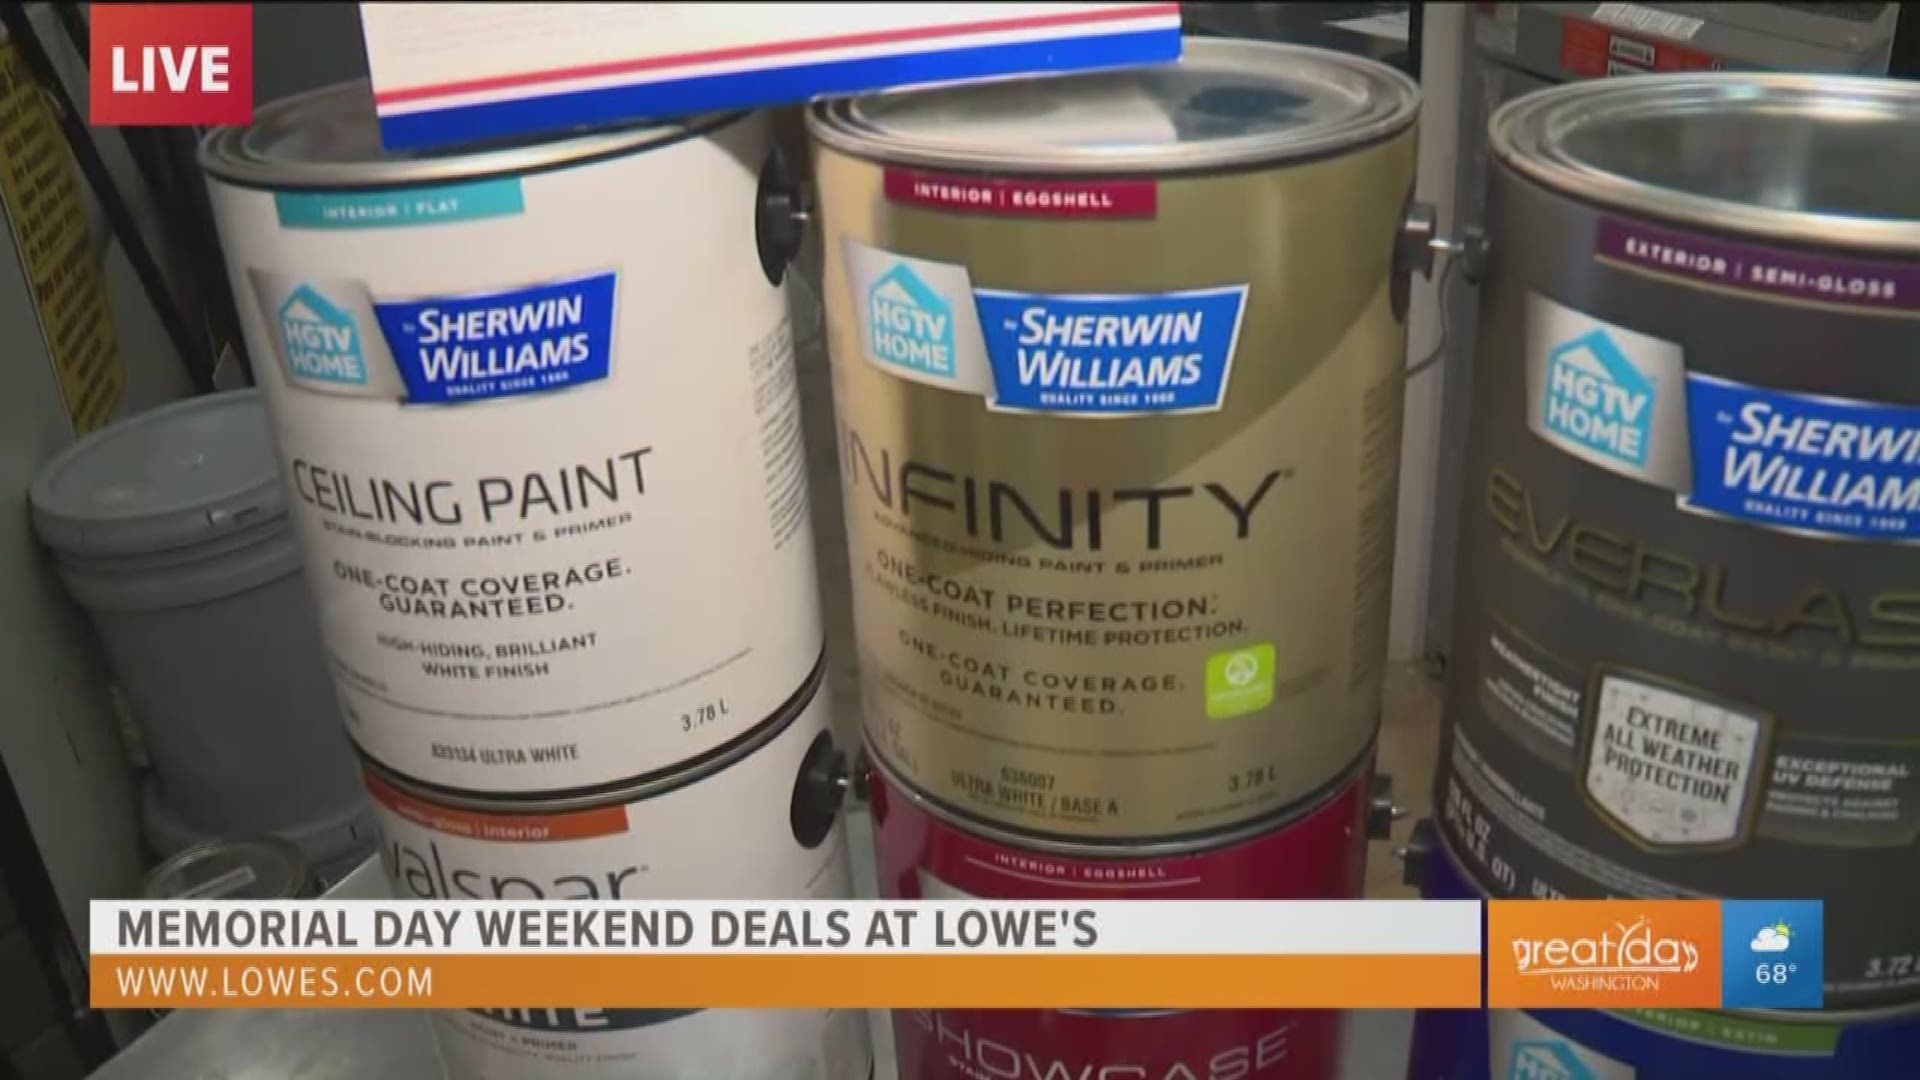 Get huge rebate savings on paint at Lowe's Memorial Day weekend sales